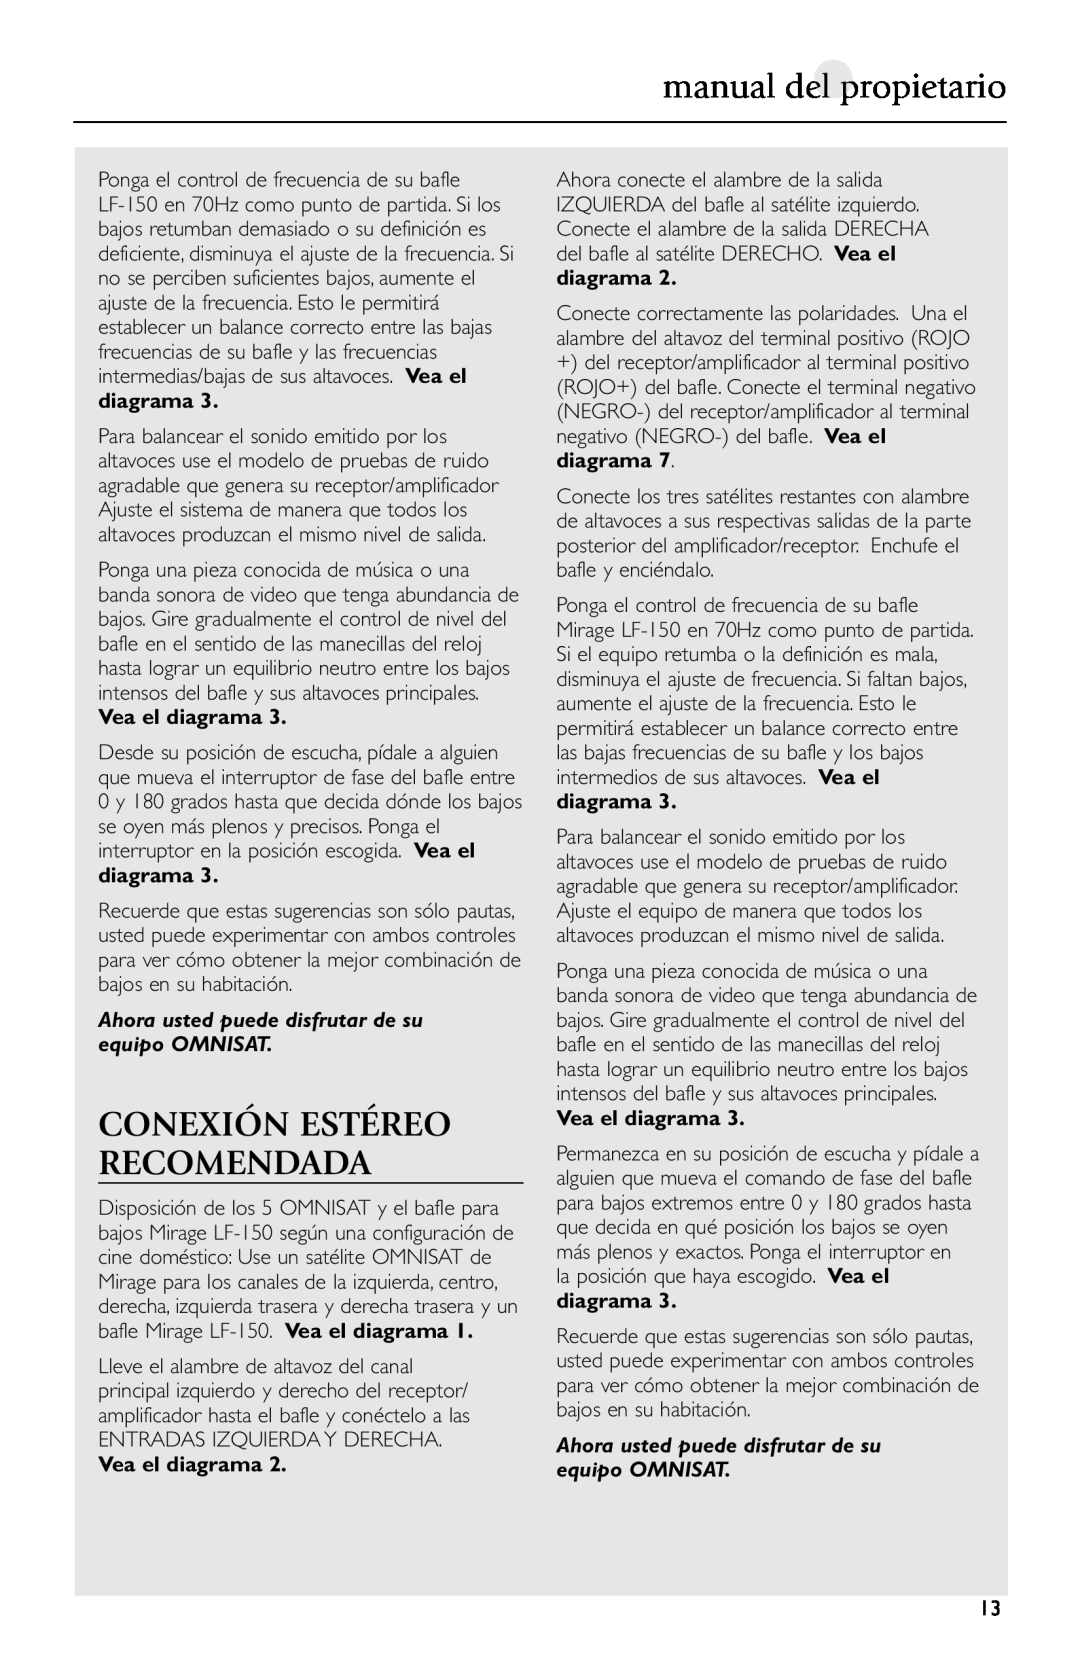 Mirage Loudspeakers Omnisat owner manual manual del propietario, Conexión Estéreo Recomendada, Vea el diagrama 